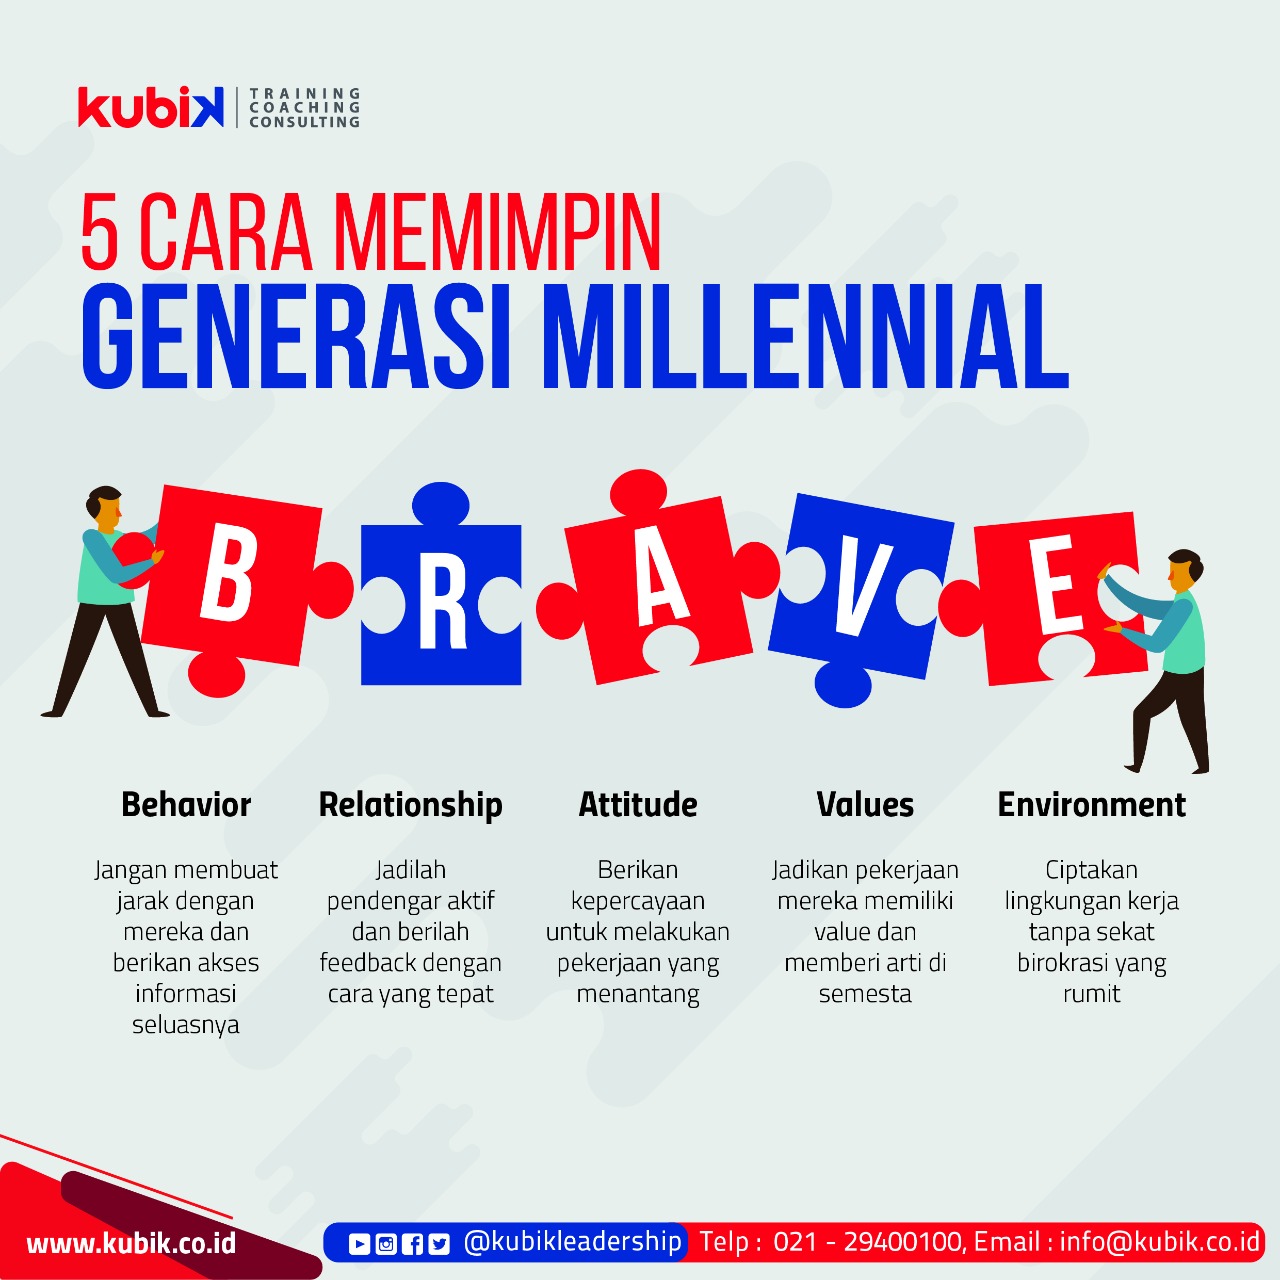 5 Cara Memimpin Generasi Millennial